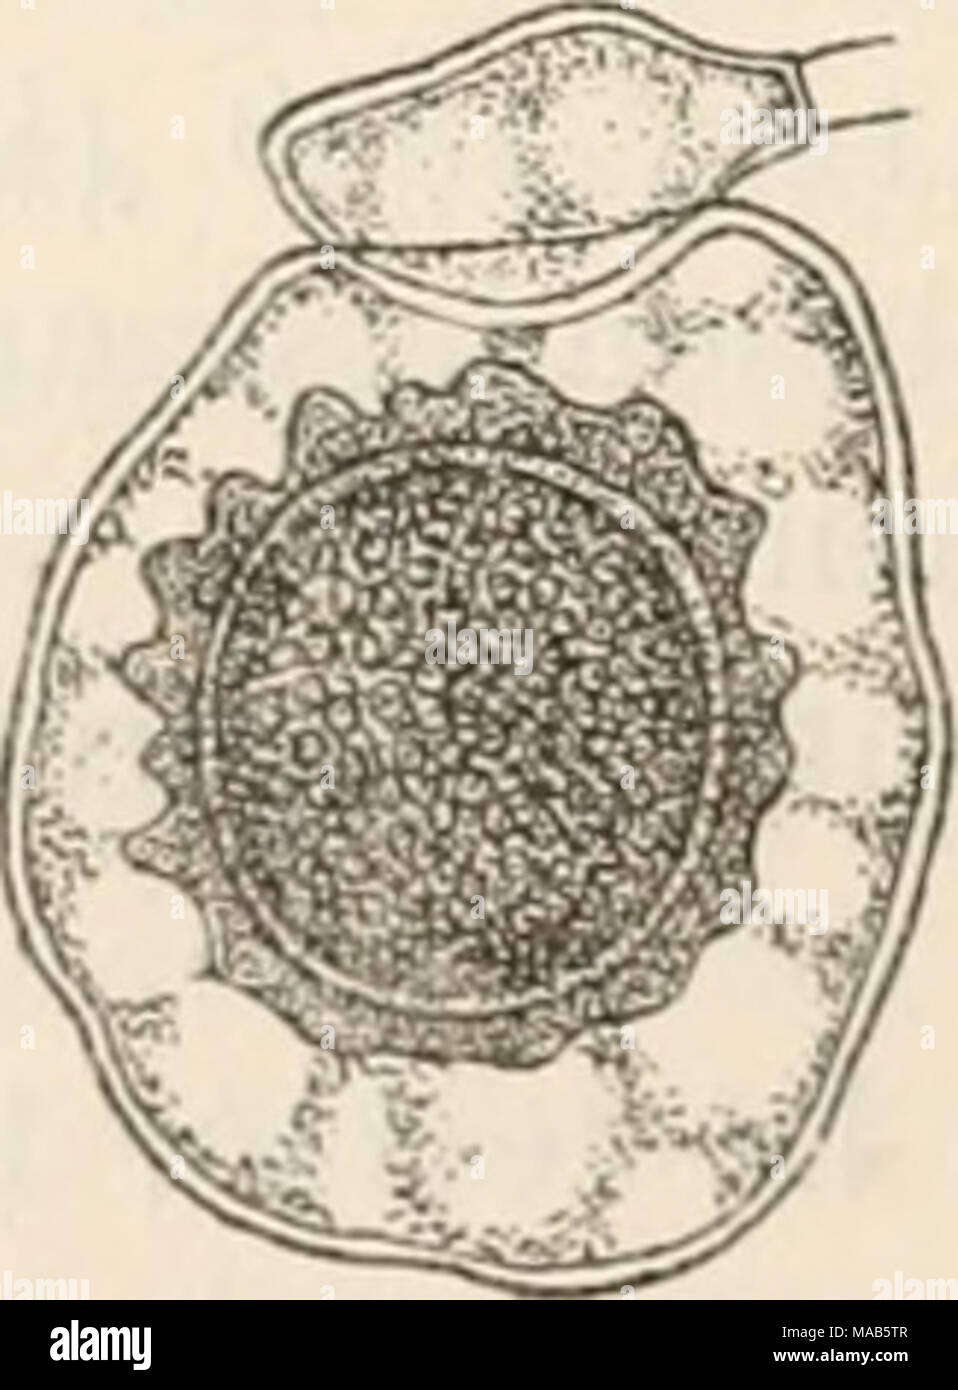 . Dr. L. Rabenhorst's Kryptogamen-Flora von Deutschland, Oesterreich und der Schweiz . Cystopus. — a C. candidus. Ein Mycelast mit drei Conidien abschnürenden Aestchen, alle Conidien gleichartig (Vergr. 400). b C. cubicus. Eine Conidien- kctte mit steriler Endconidie (t) (Vergr. 400). c—f C. candidus. c Ein Oogon mit heranreifender Oospore, von der aus Periplasmafäden nach der Oogonwand ausstraMen, oben ein Antheridium (Vergr. 400). d Eine keimende Oospore, noch von der Oogonwand locker eingehüllt, der Inhalt ist in der hervorgestülpten Bhise in Schwärmsporen zerfallen (Vergr. 400). e Ein Mvce Stock Photo